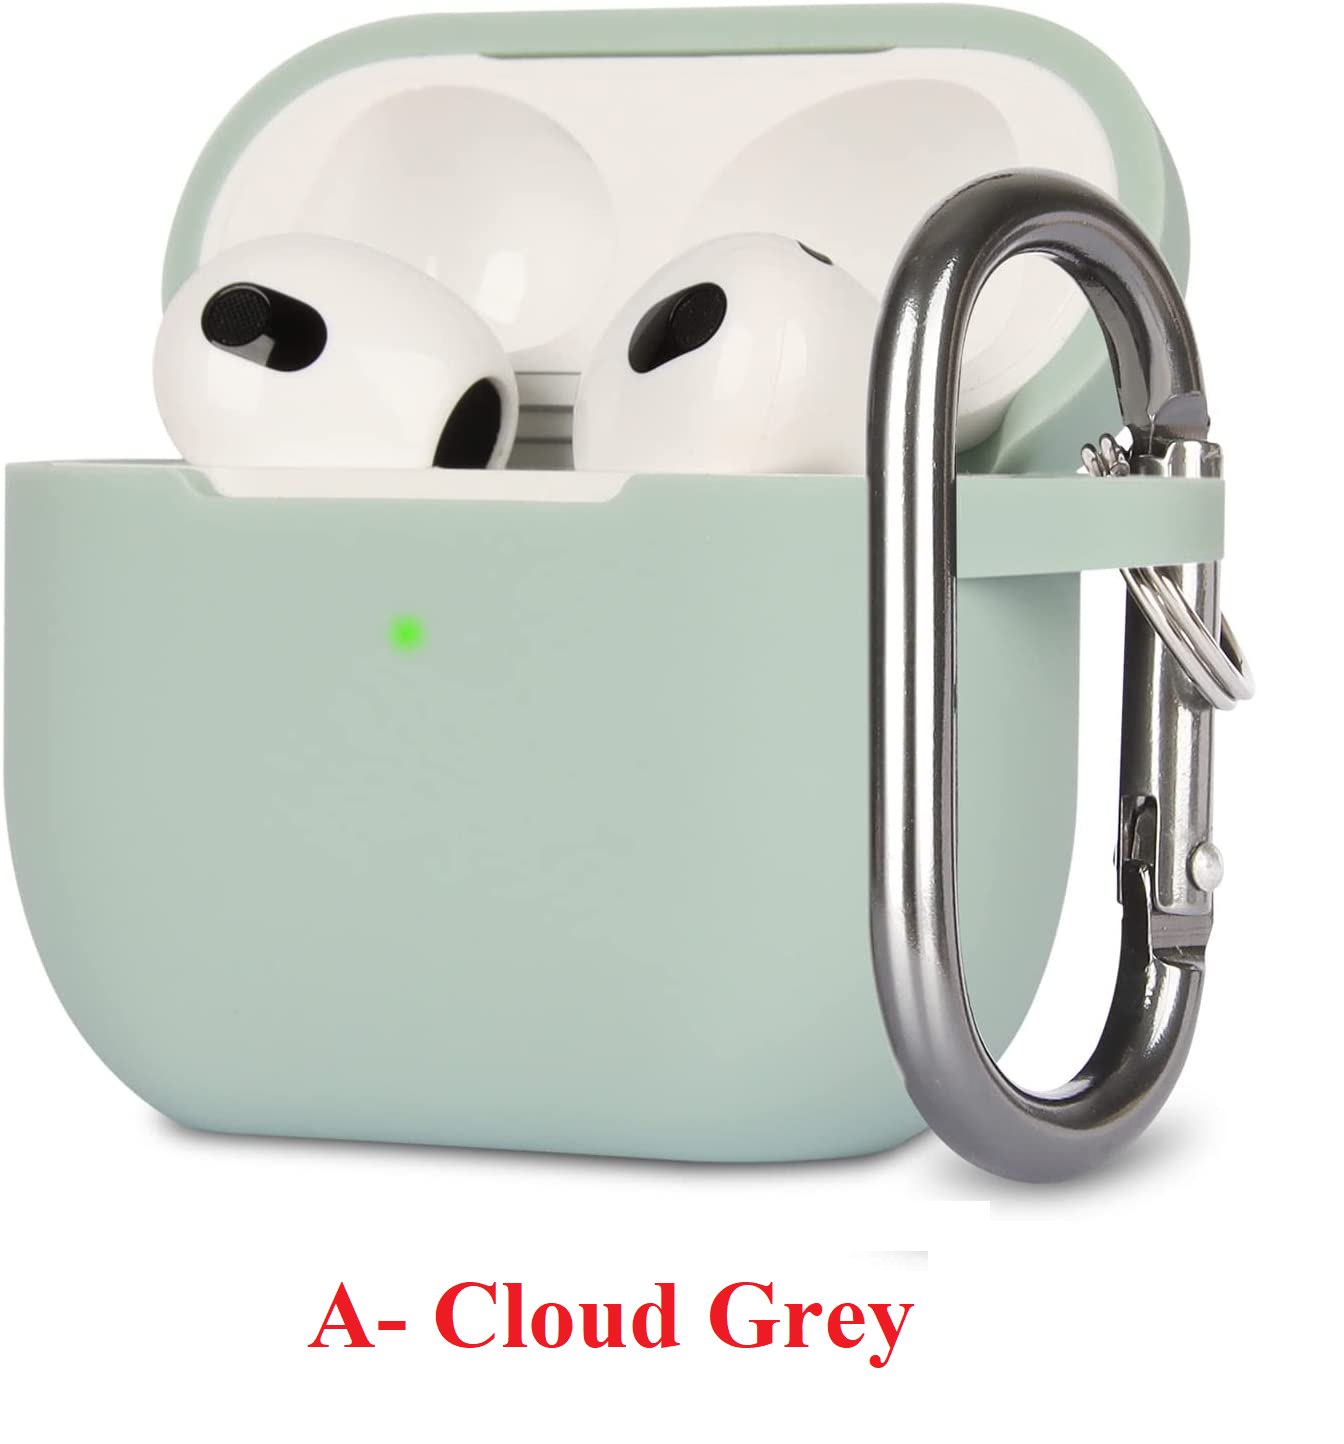 A-Cloud Grey